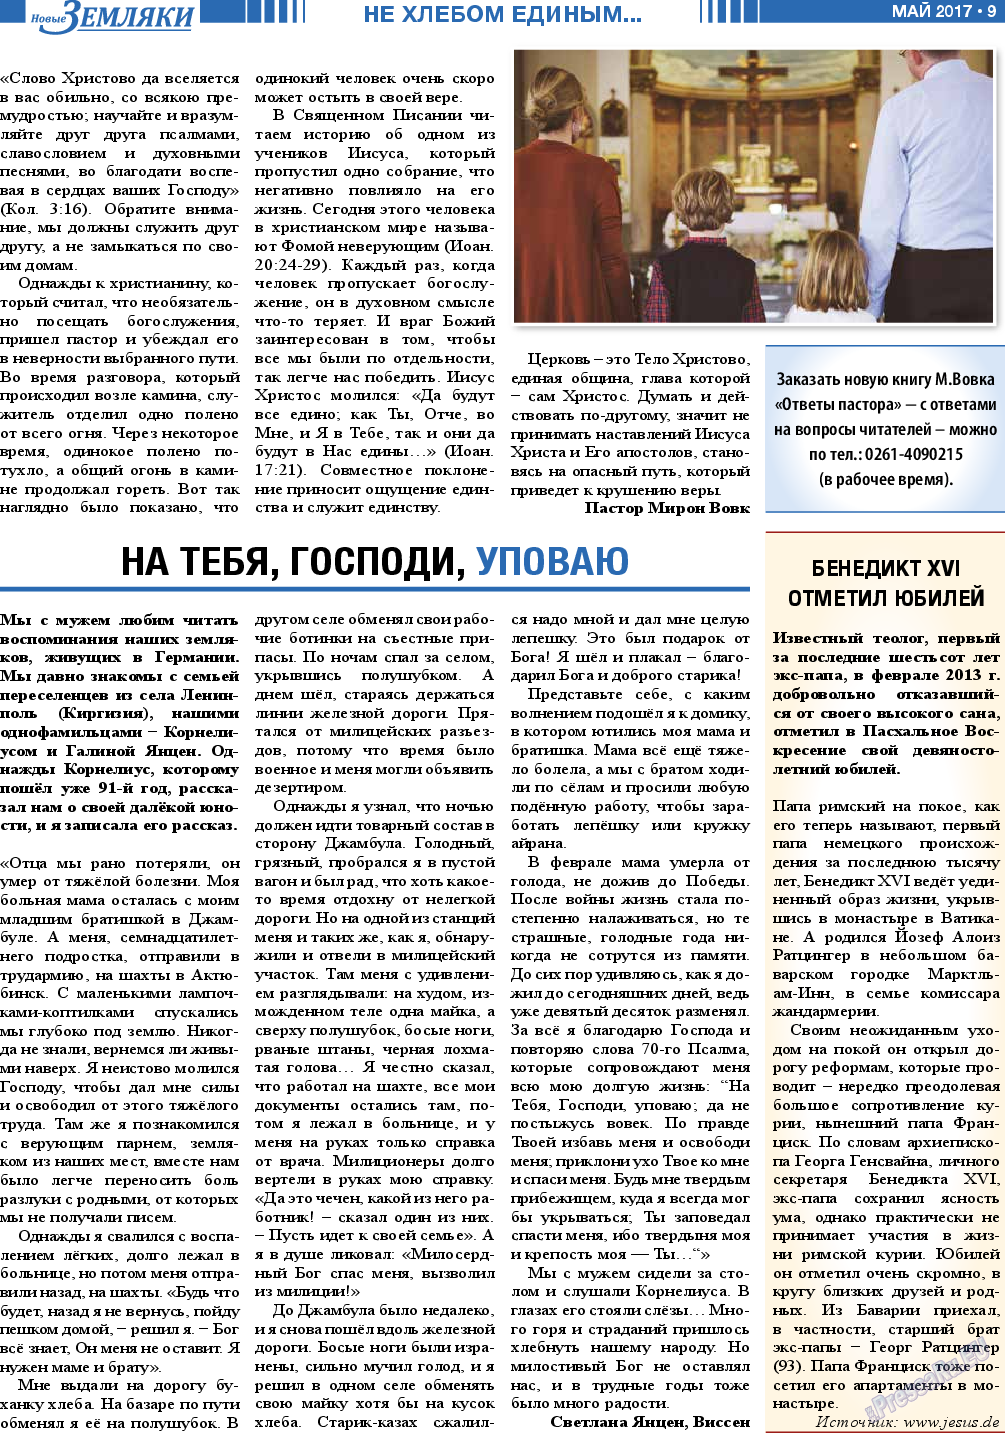 Новые Земляки (газета). 2017 год, номер 5, стр. 9